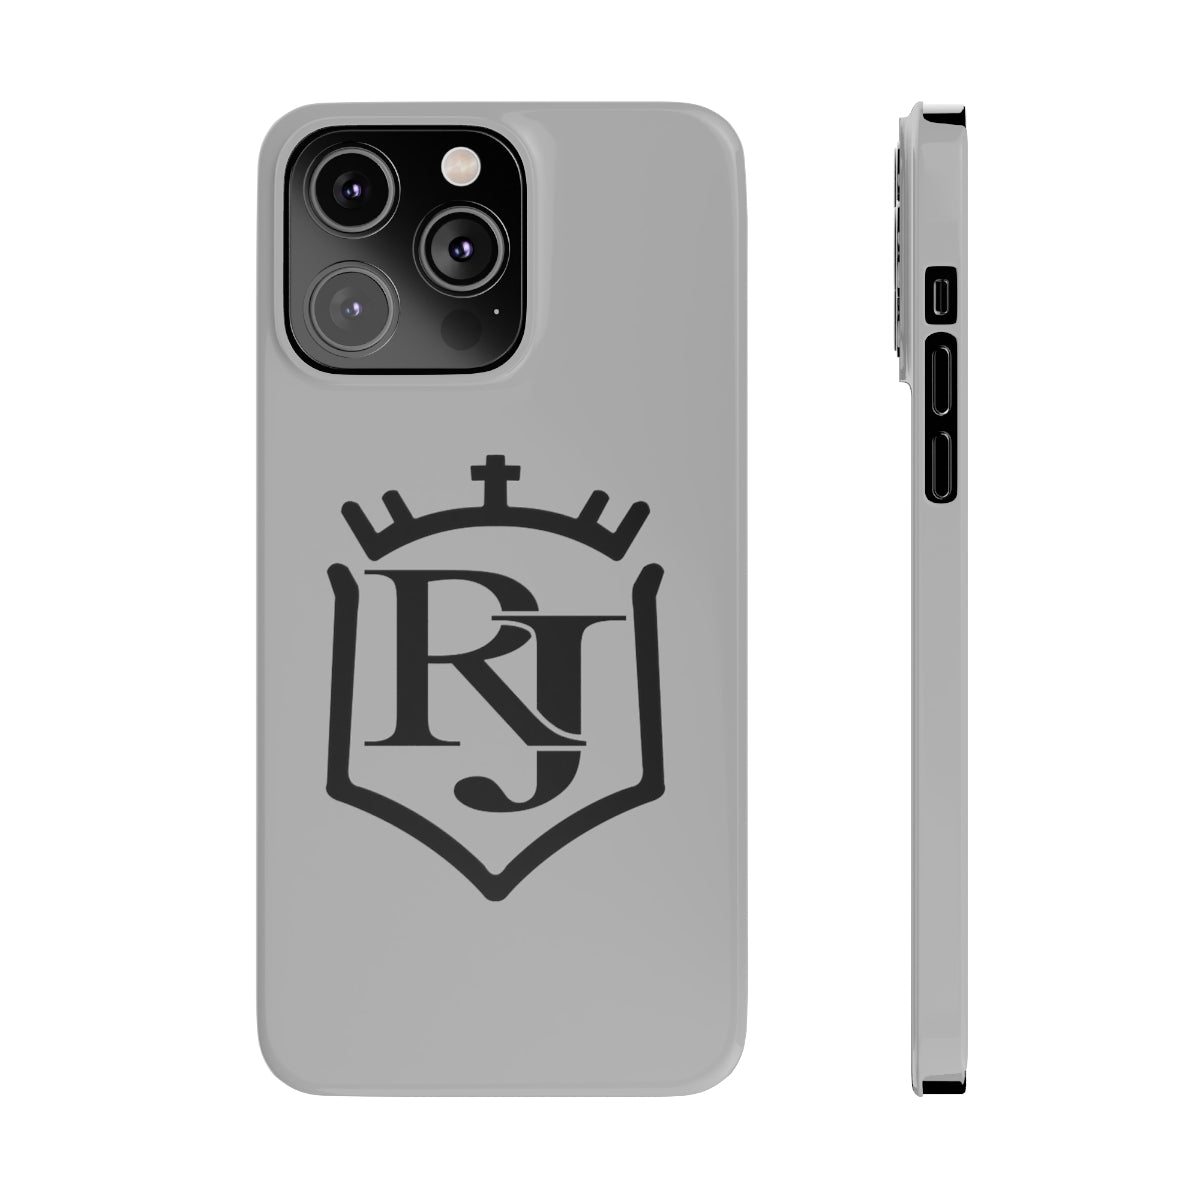 R J Escudo Slim Phone Cases, Case-Mate